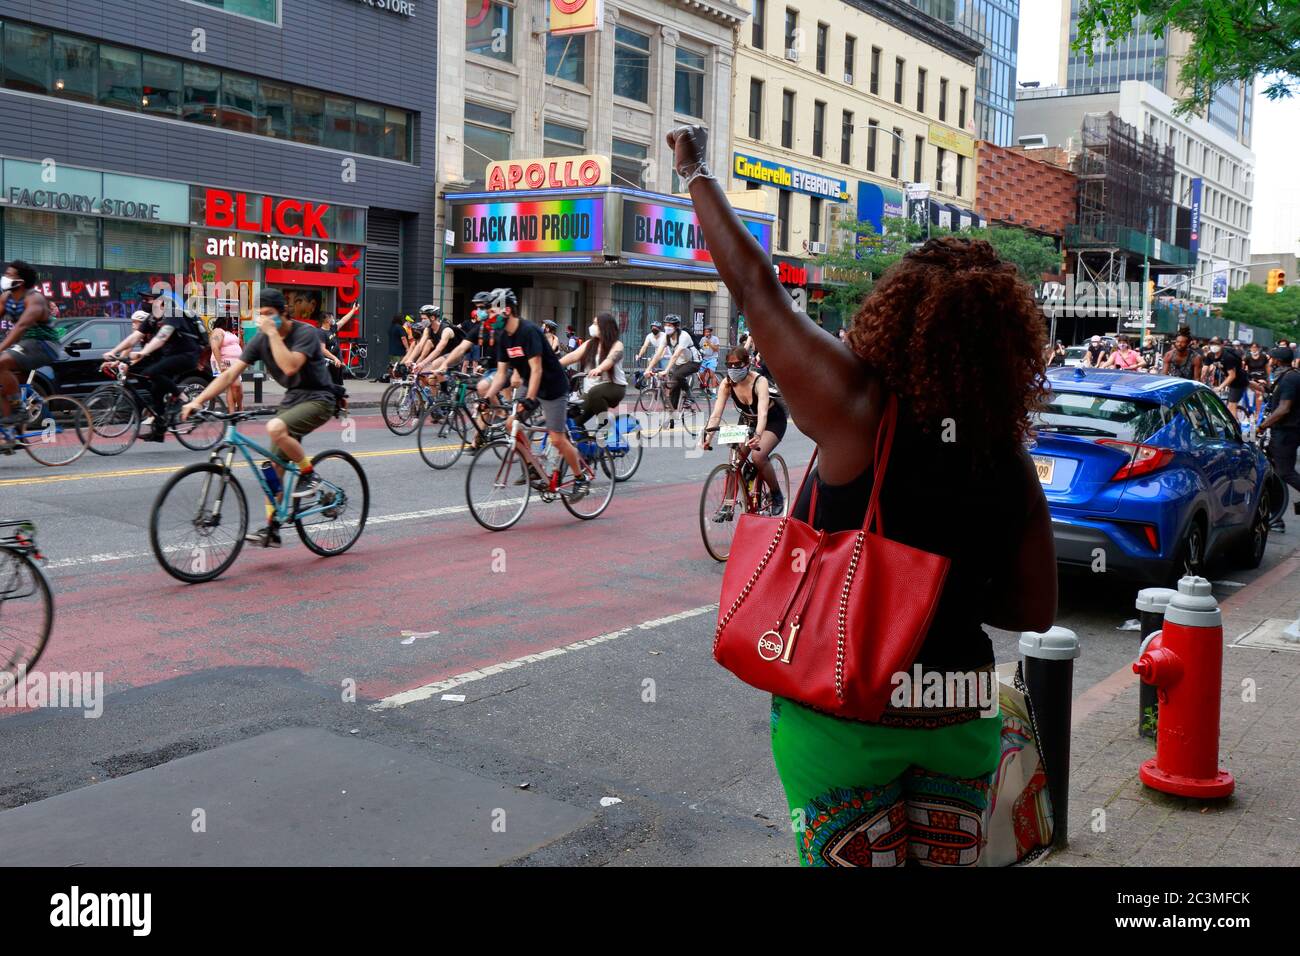 New York, NY., 20 juin 2020. Une femme avec un poing levé se dresse en face de l'Apollo Theatre avec « Black and Proud » exposé sur le chapiteau tandis que les manifestants sur les cyclistes défilent devant. La manifestation à vélo était une course de solidarité pour les Black Lives Matter qui réclalait la justice dans une série récente de meurtres de la police américaine : George Floyd, Breonna Taylor et d'innombrables autres. La balade en vélo a été organisée par le collectif appelé Street Riders NYC. Plusieurs milliers de personnes ont participé à la manifestation itinérante qui a voyagé de Times Square, Harlem et Battery Park. 20 juin 2020 Banque D'Images